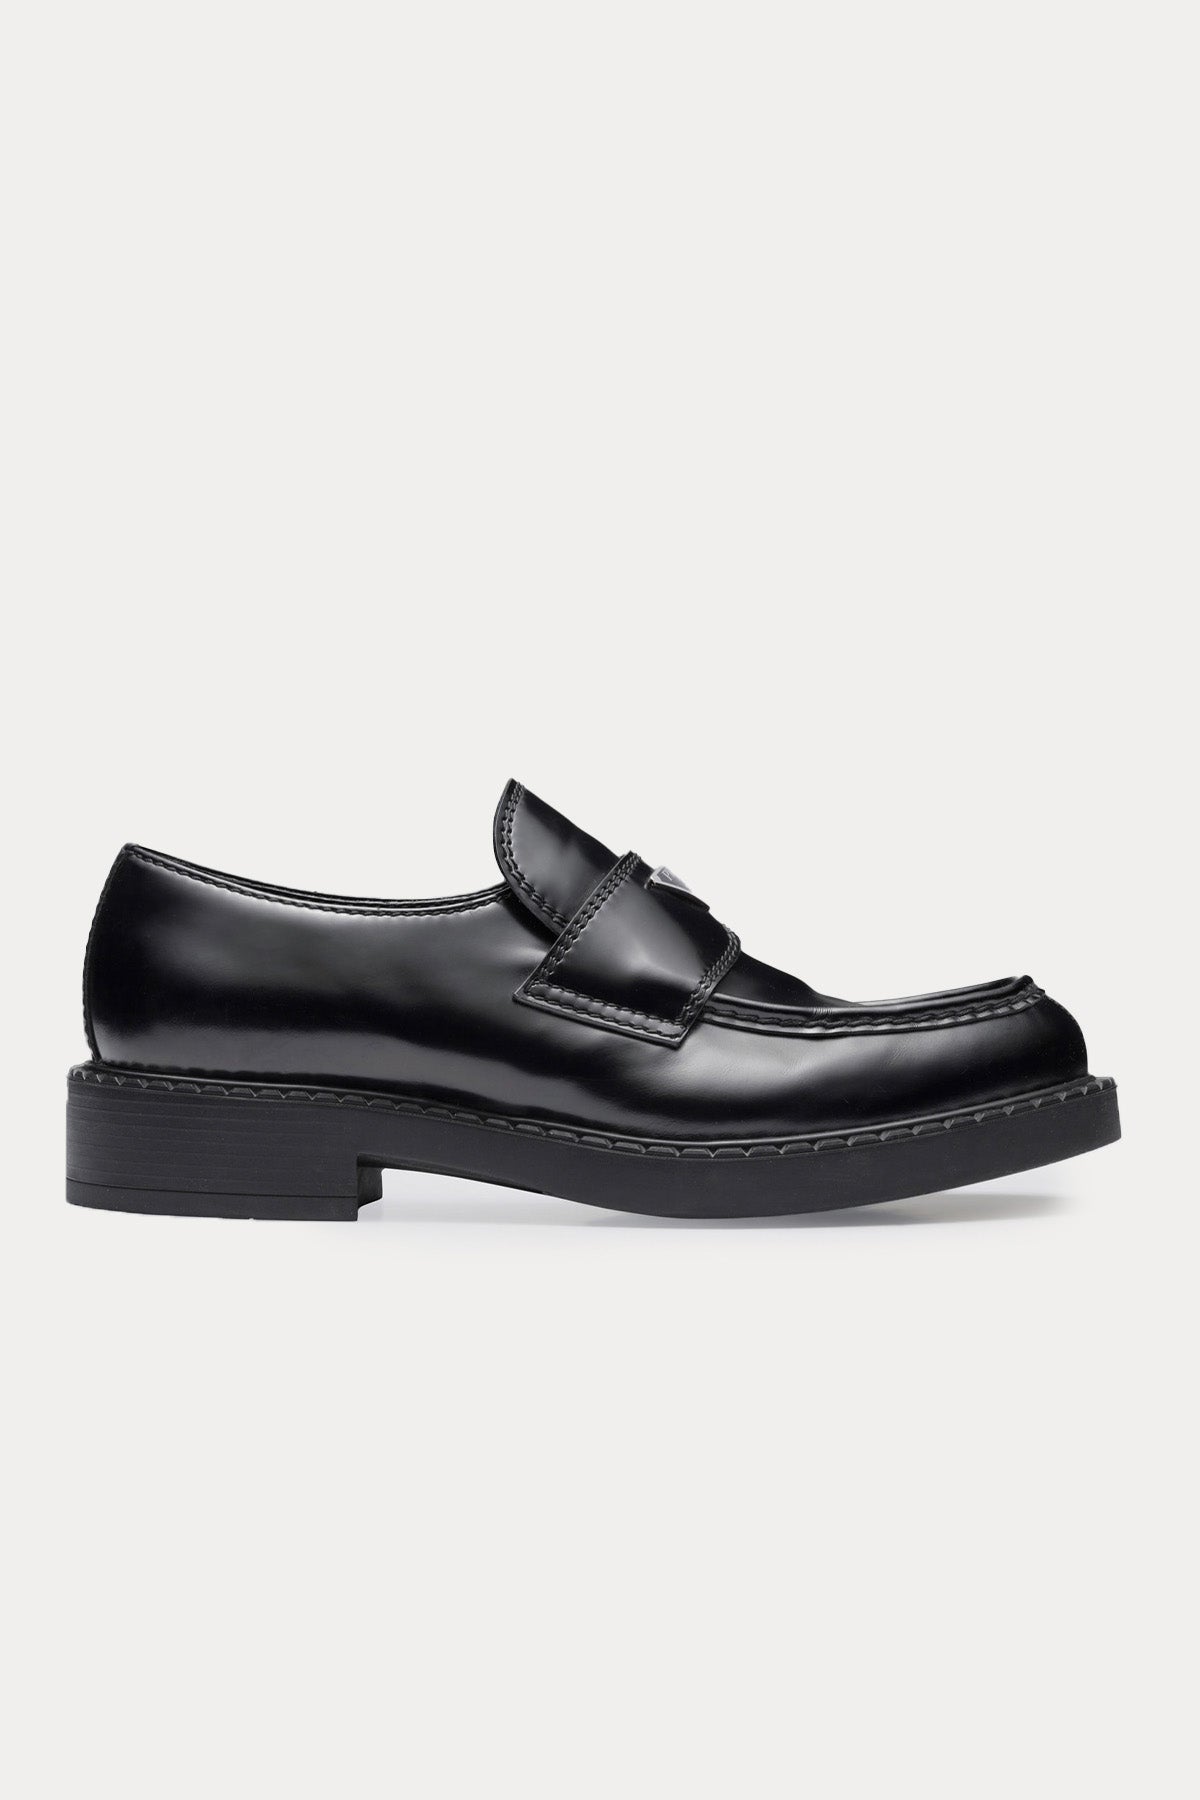 Prada Deri Loafer Ayakkabı